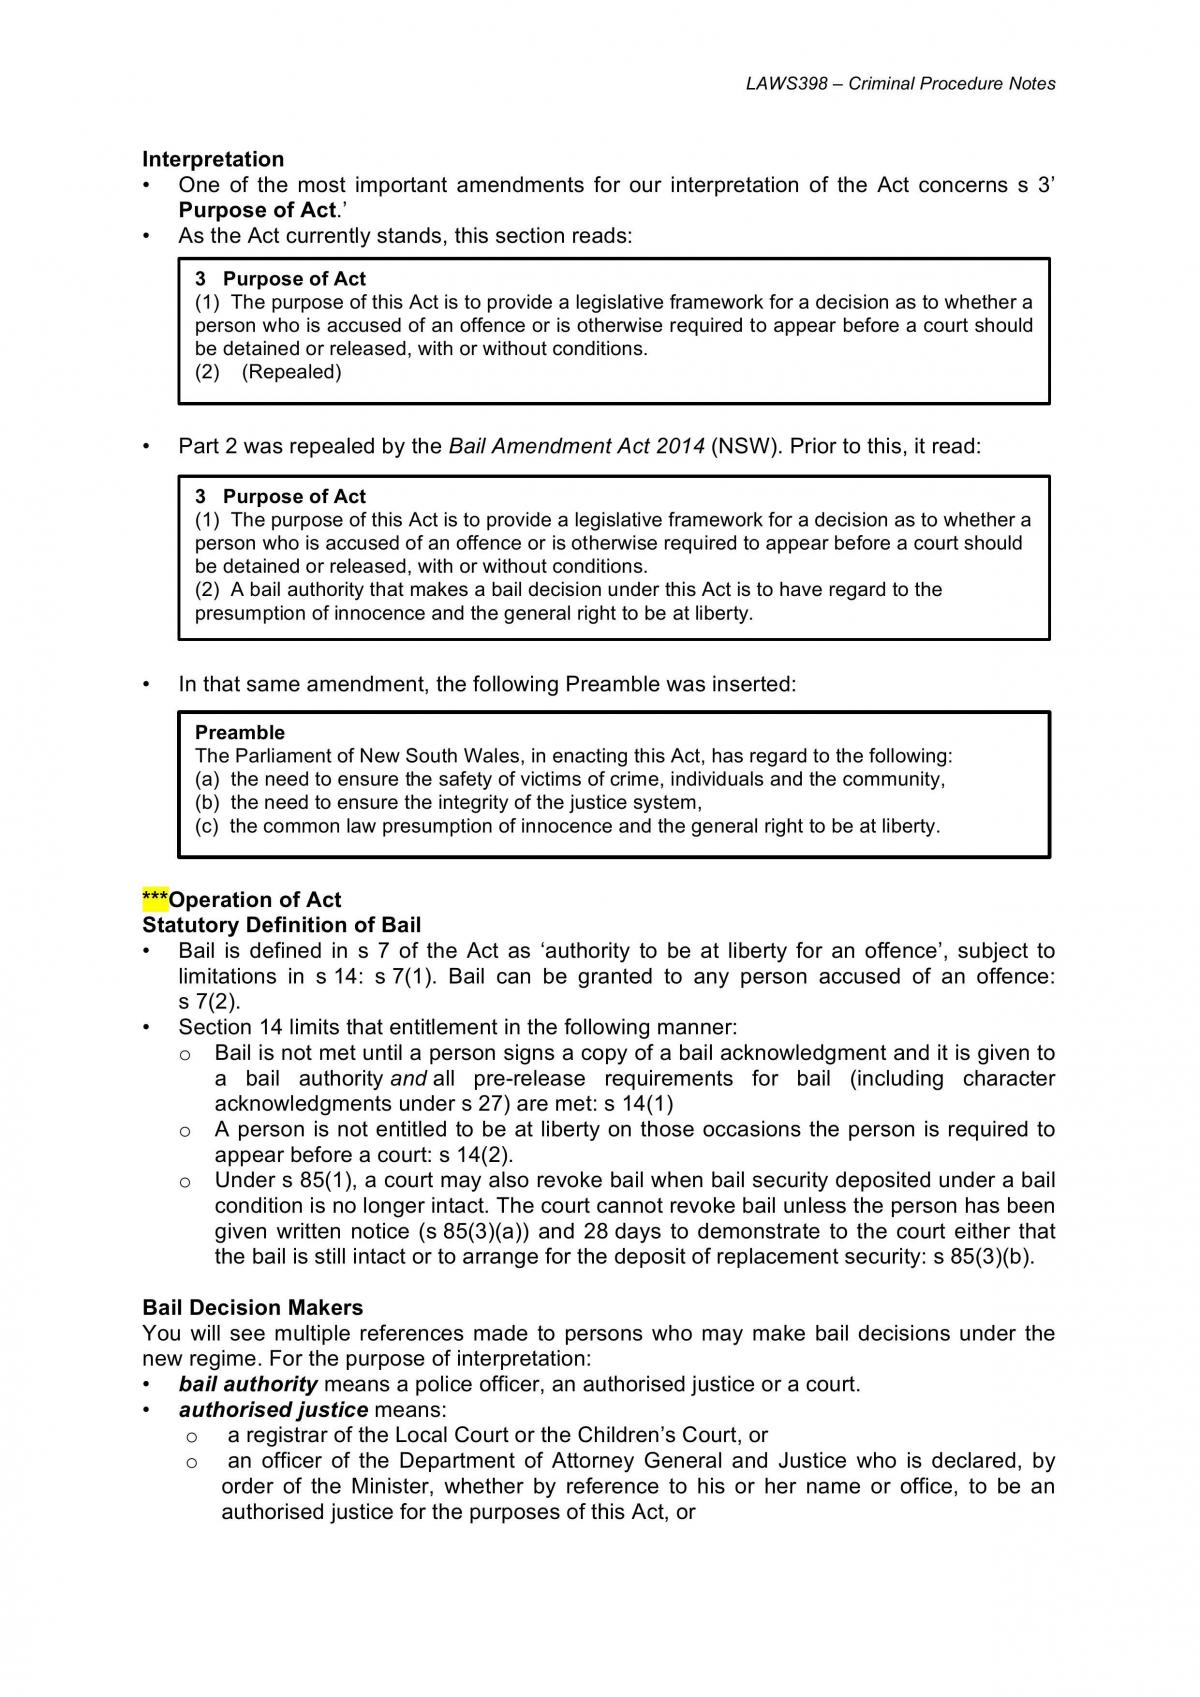 Criminal Procedure Notes - Page 29